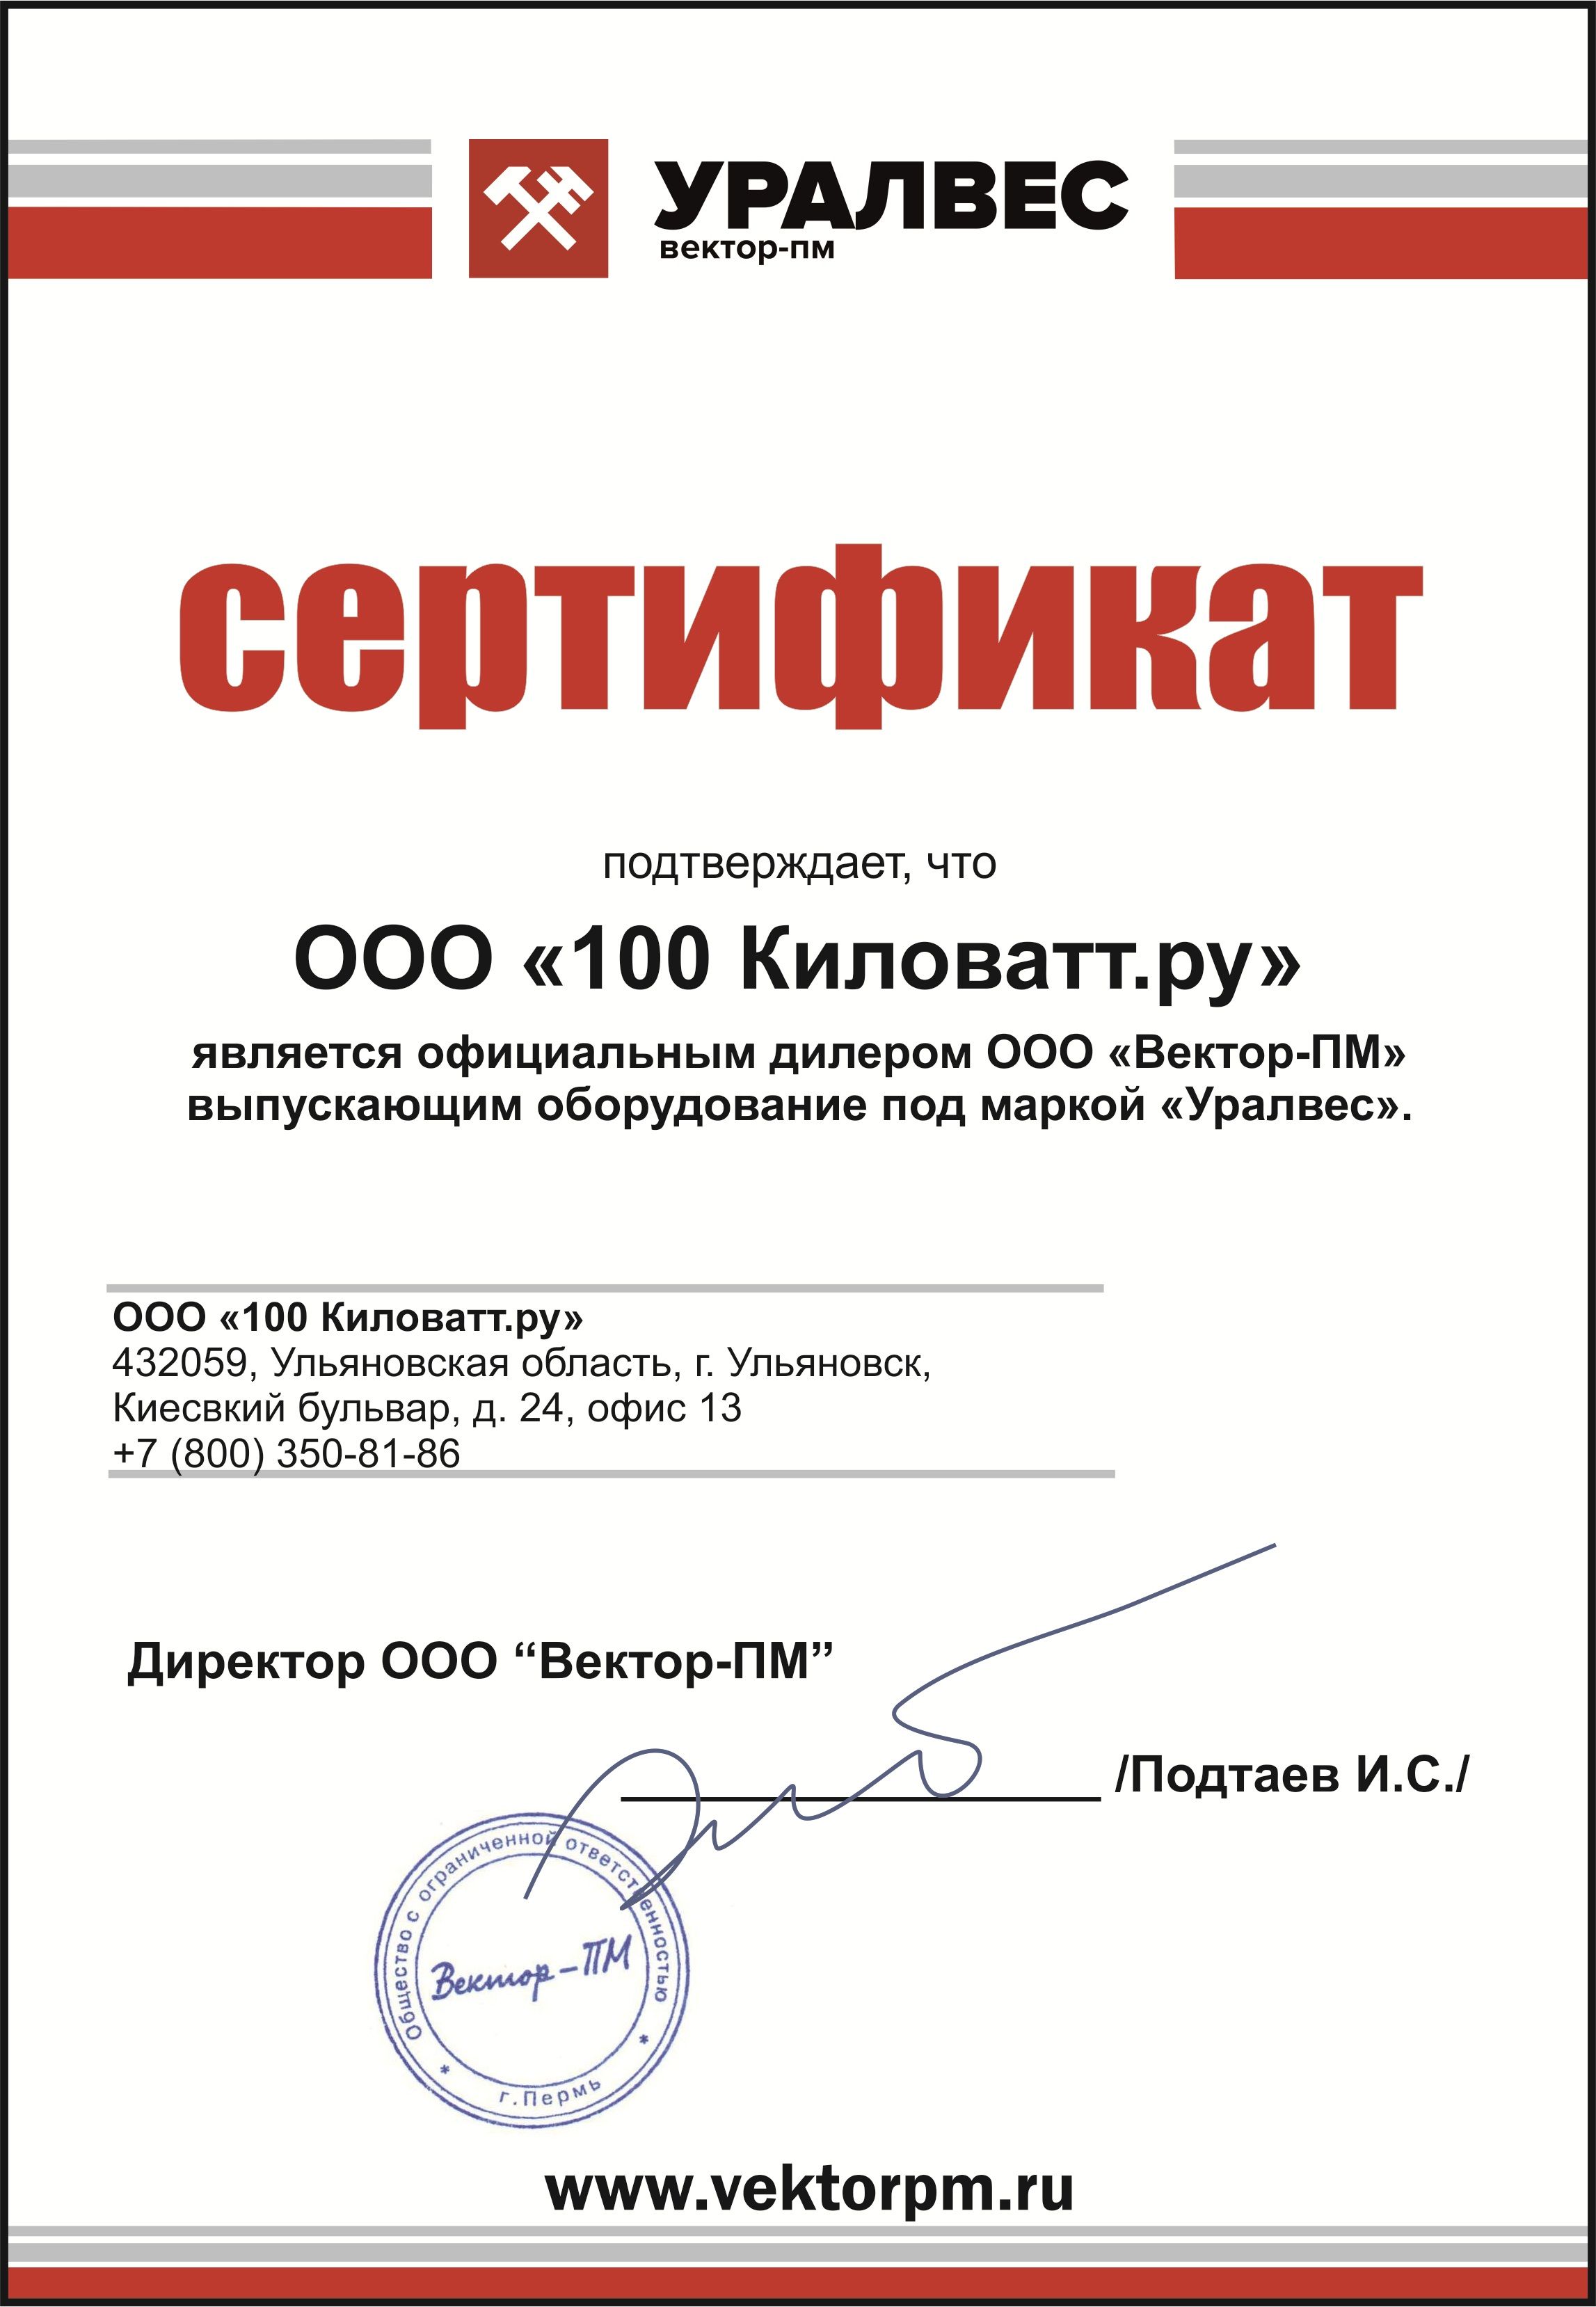 УралВес - сертификат дилера